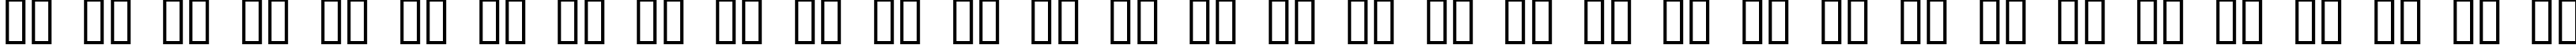 Пример написания русского алфавита шрифтом ROBO